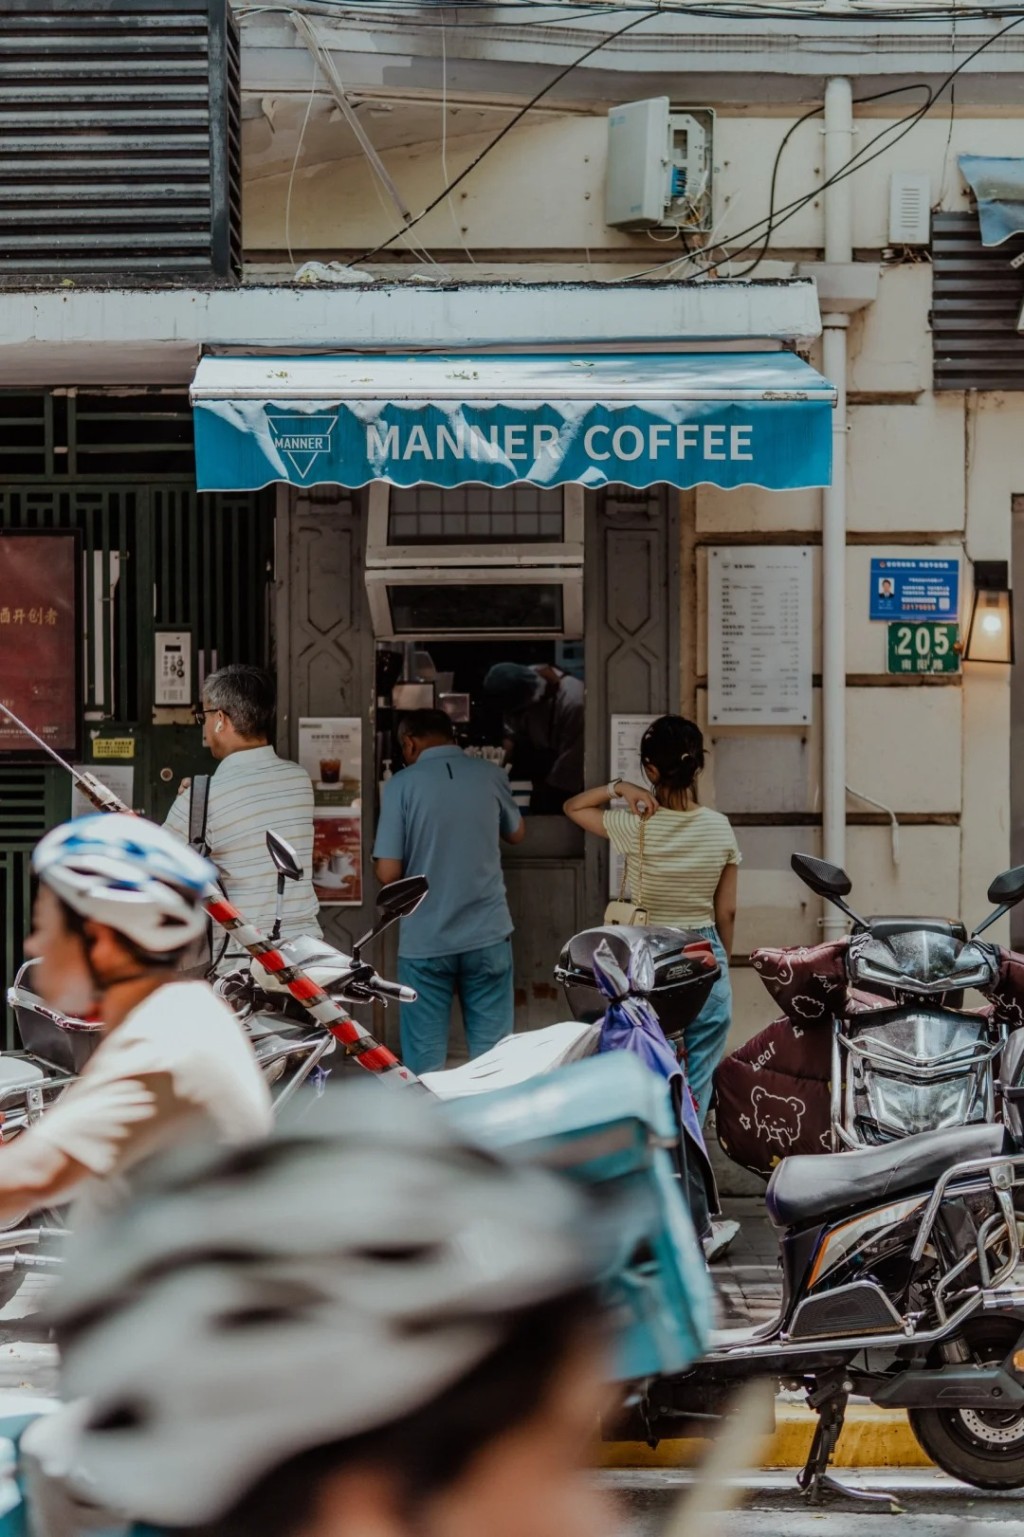 上海Manner Coffee是网红咖啡店。